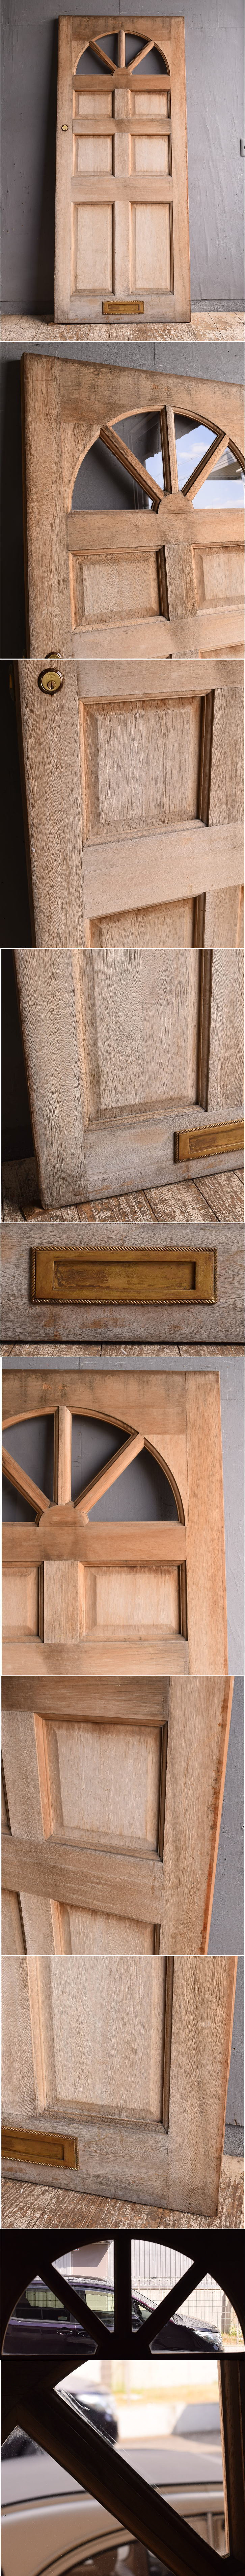 イギリス アンティーク 木製ドア 扉 建具 12316